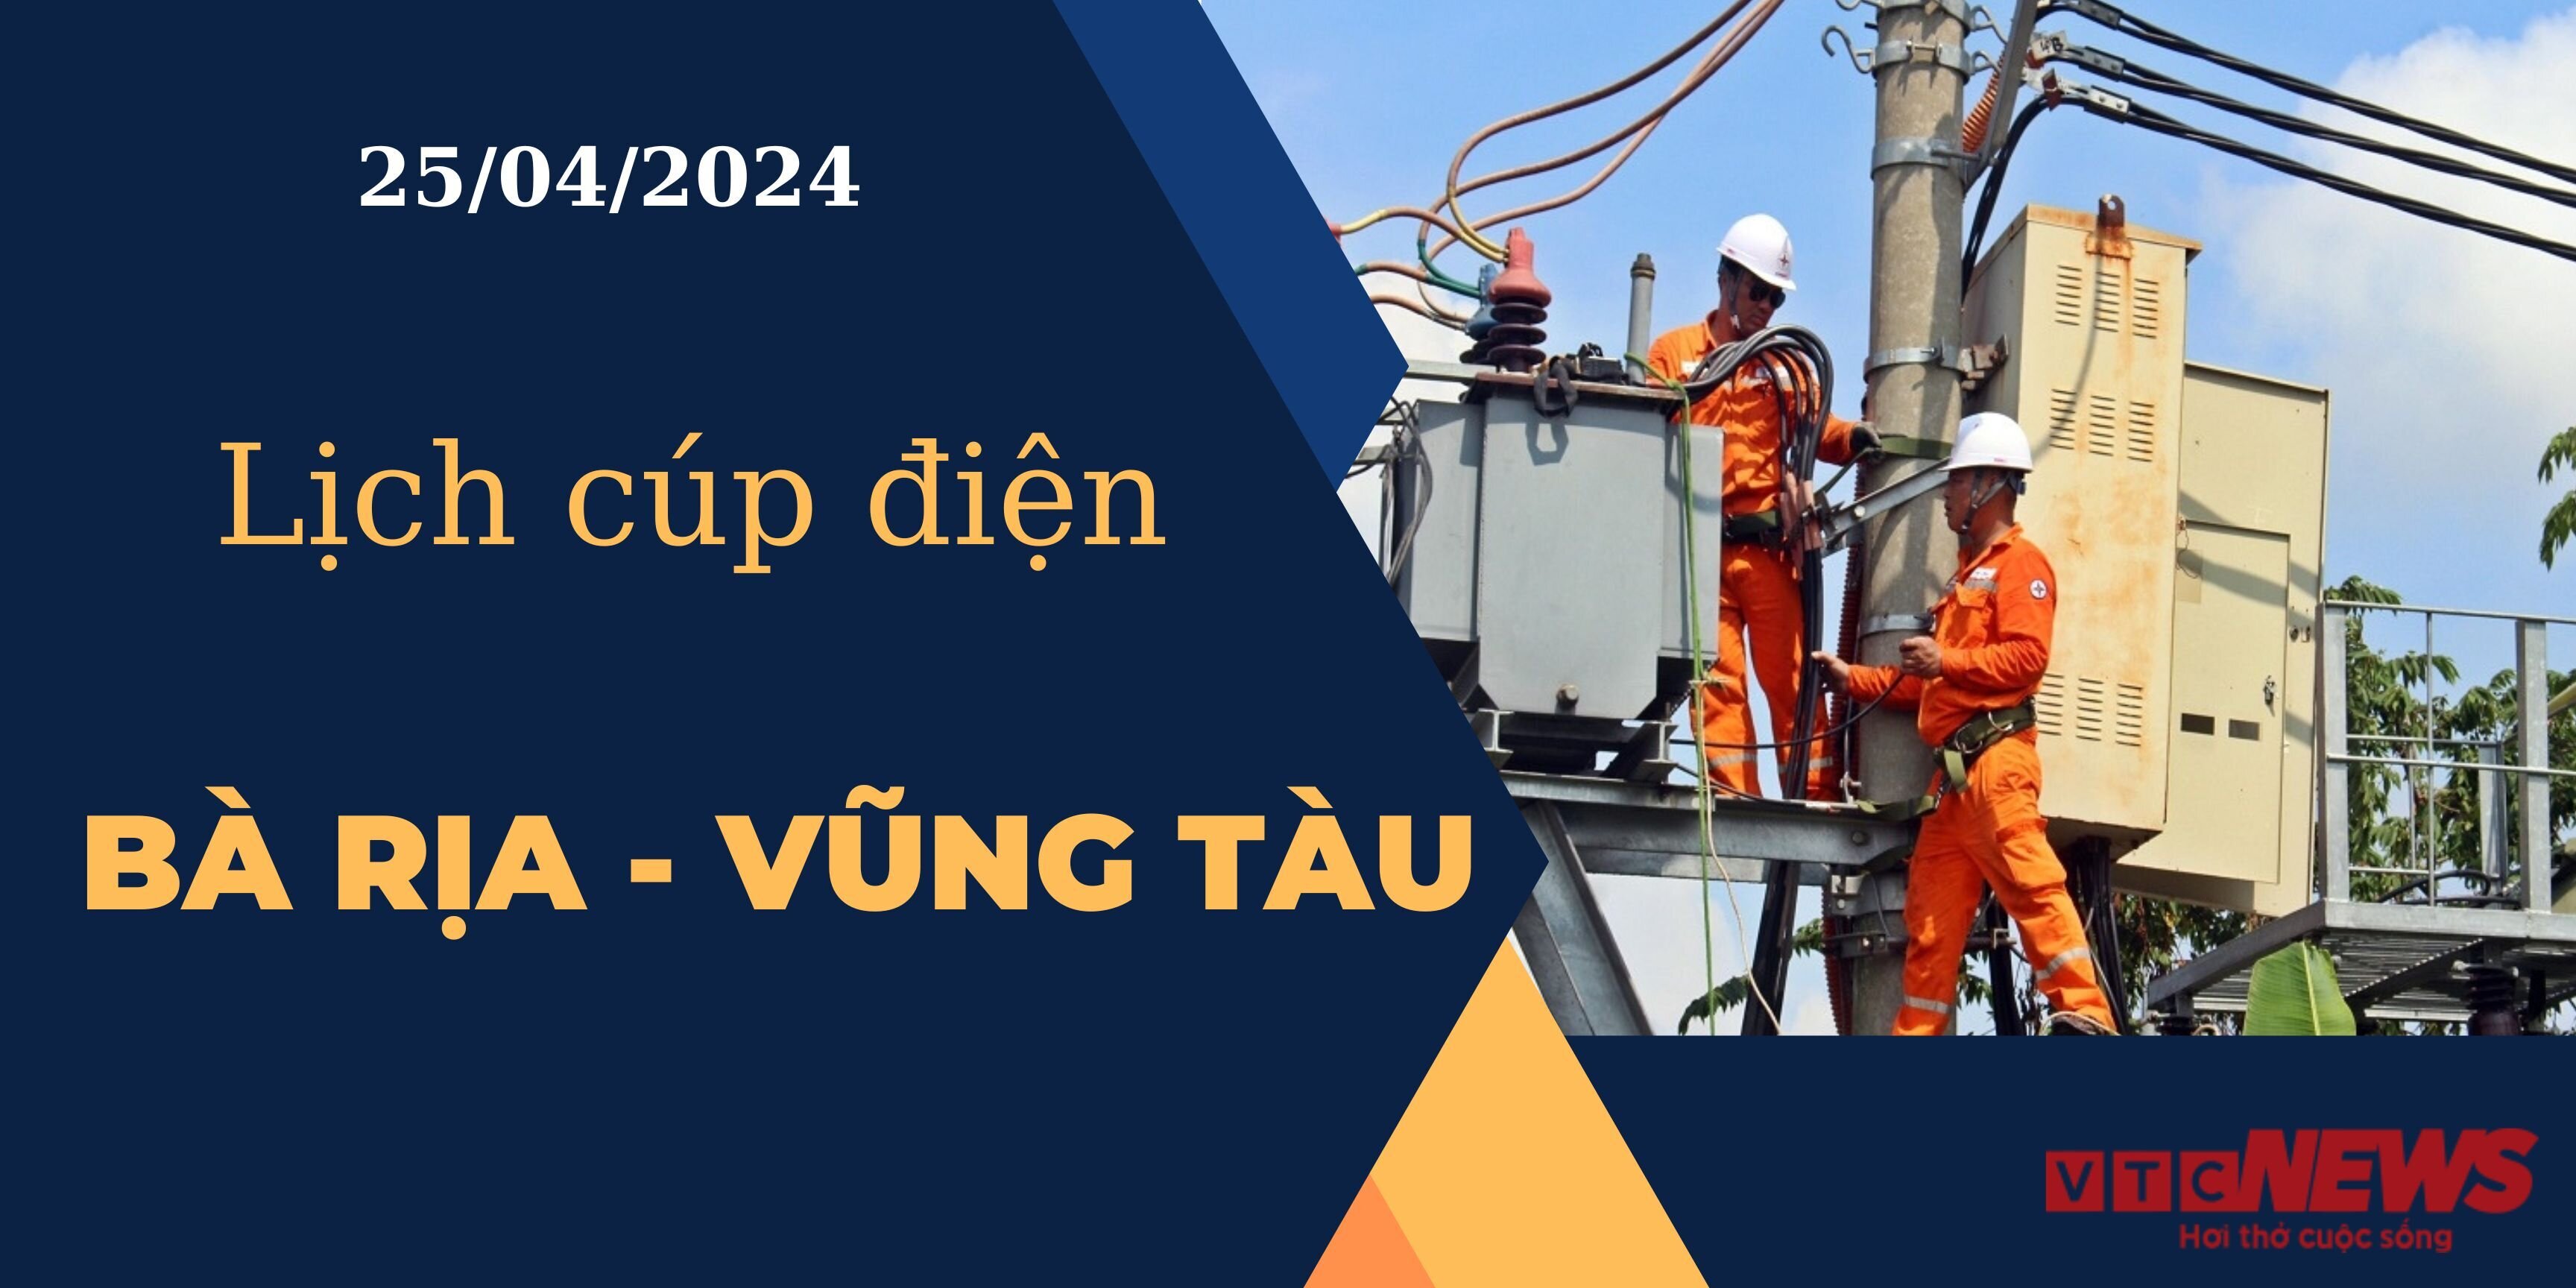 Lịch cúp điện hôm nay ngày 25/04/2024 tại Bà Rịa - Vũng Tàu